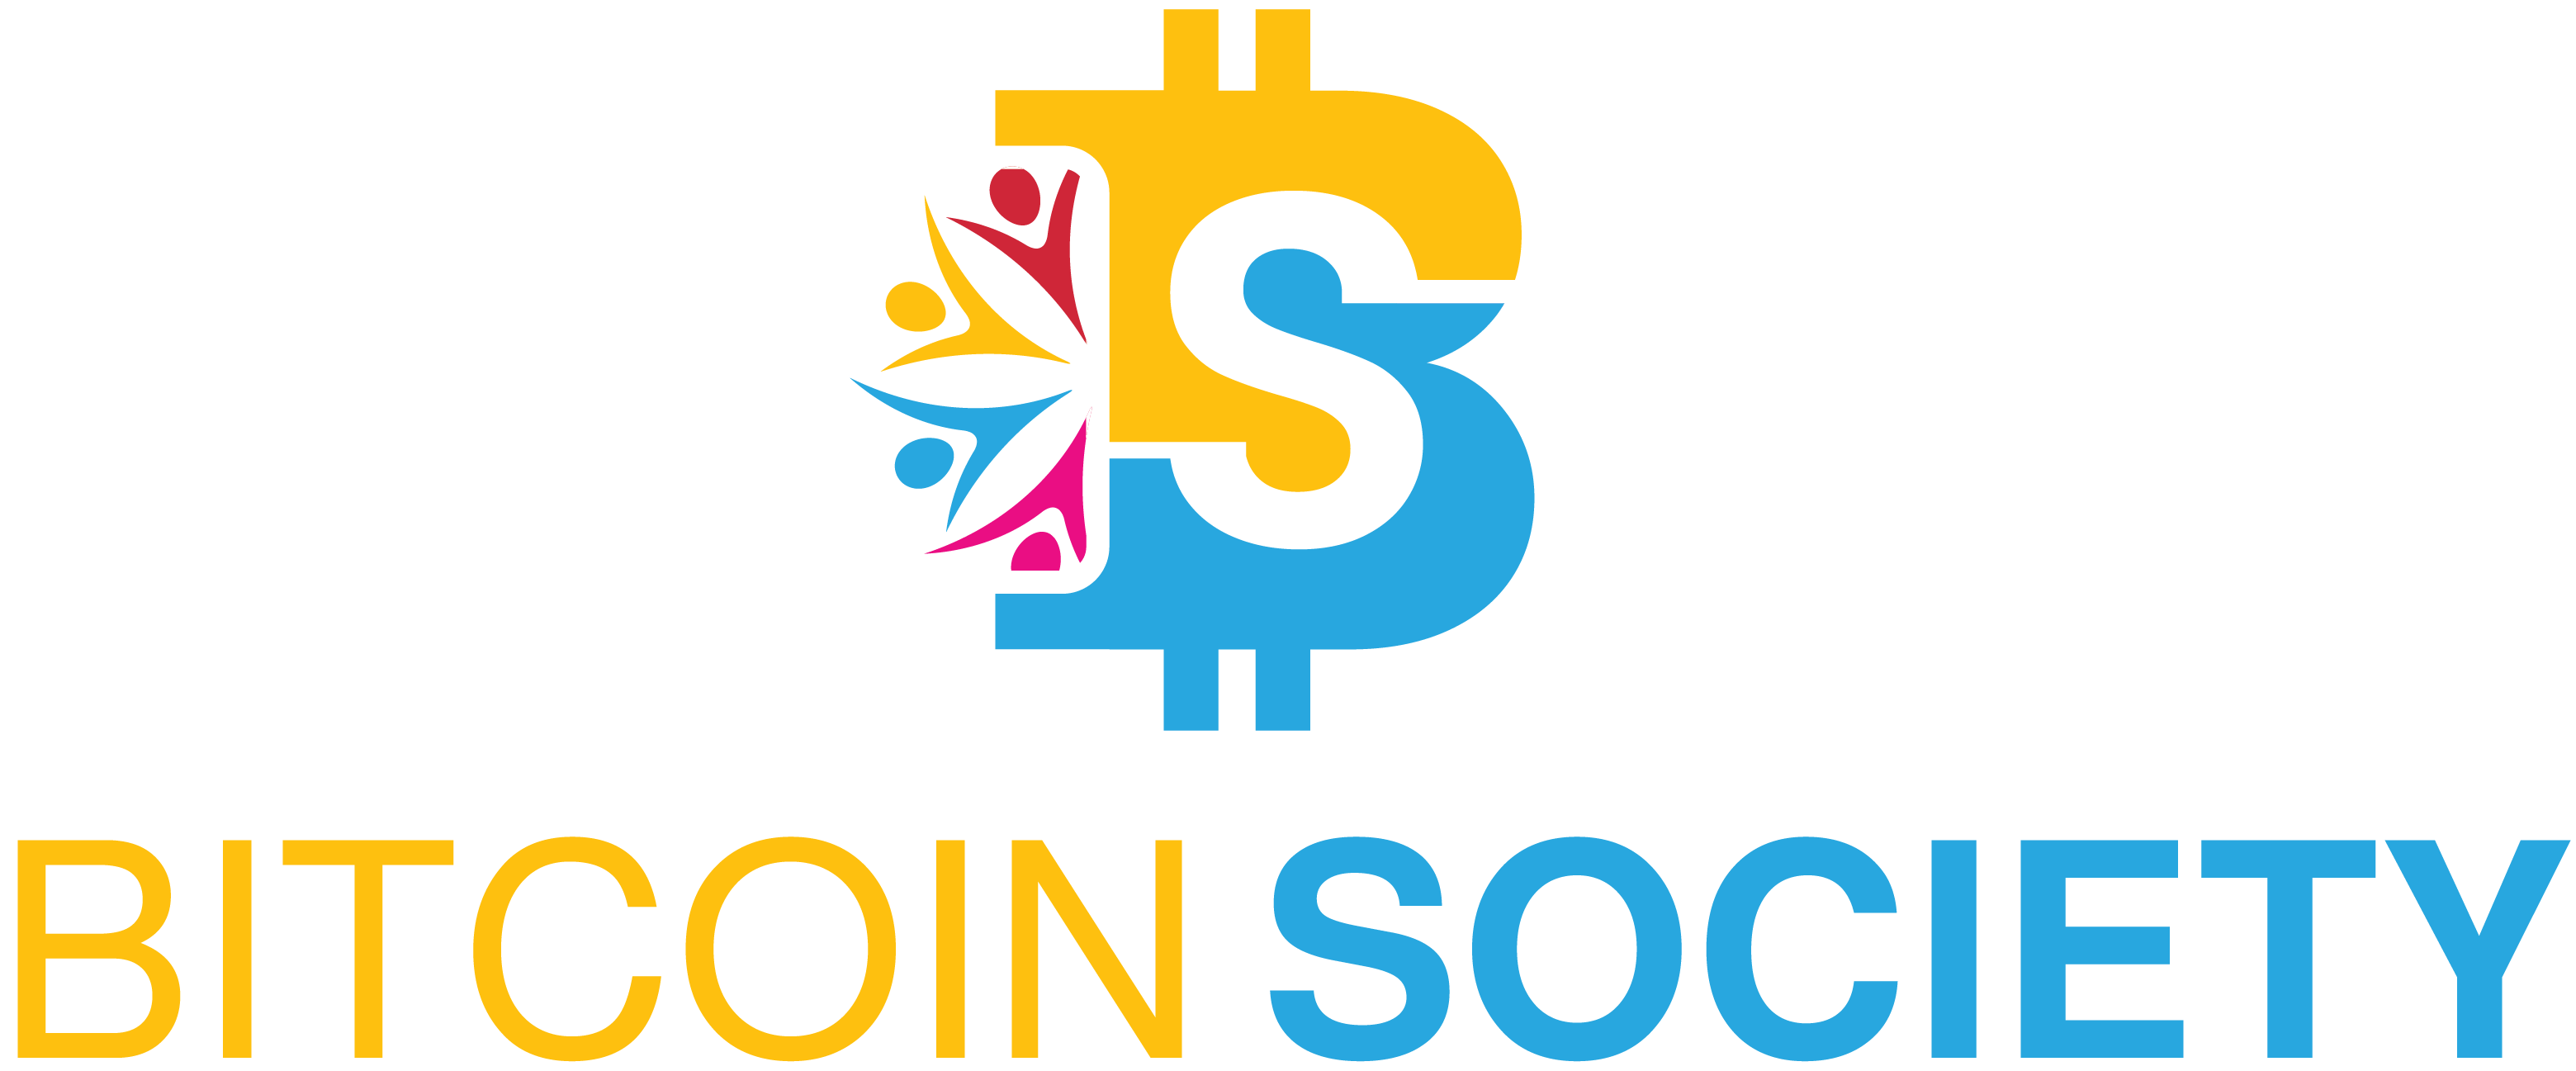 Bitcoin Society - فريق Bitcoin Society